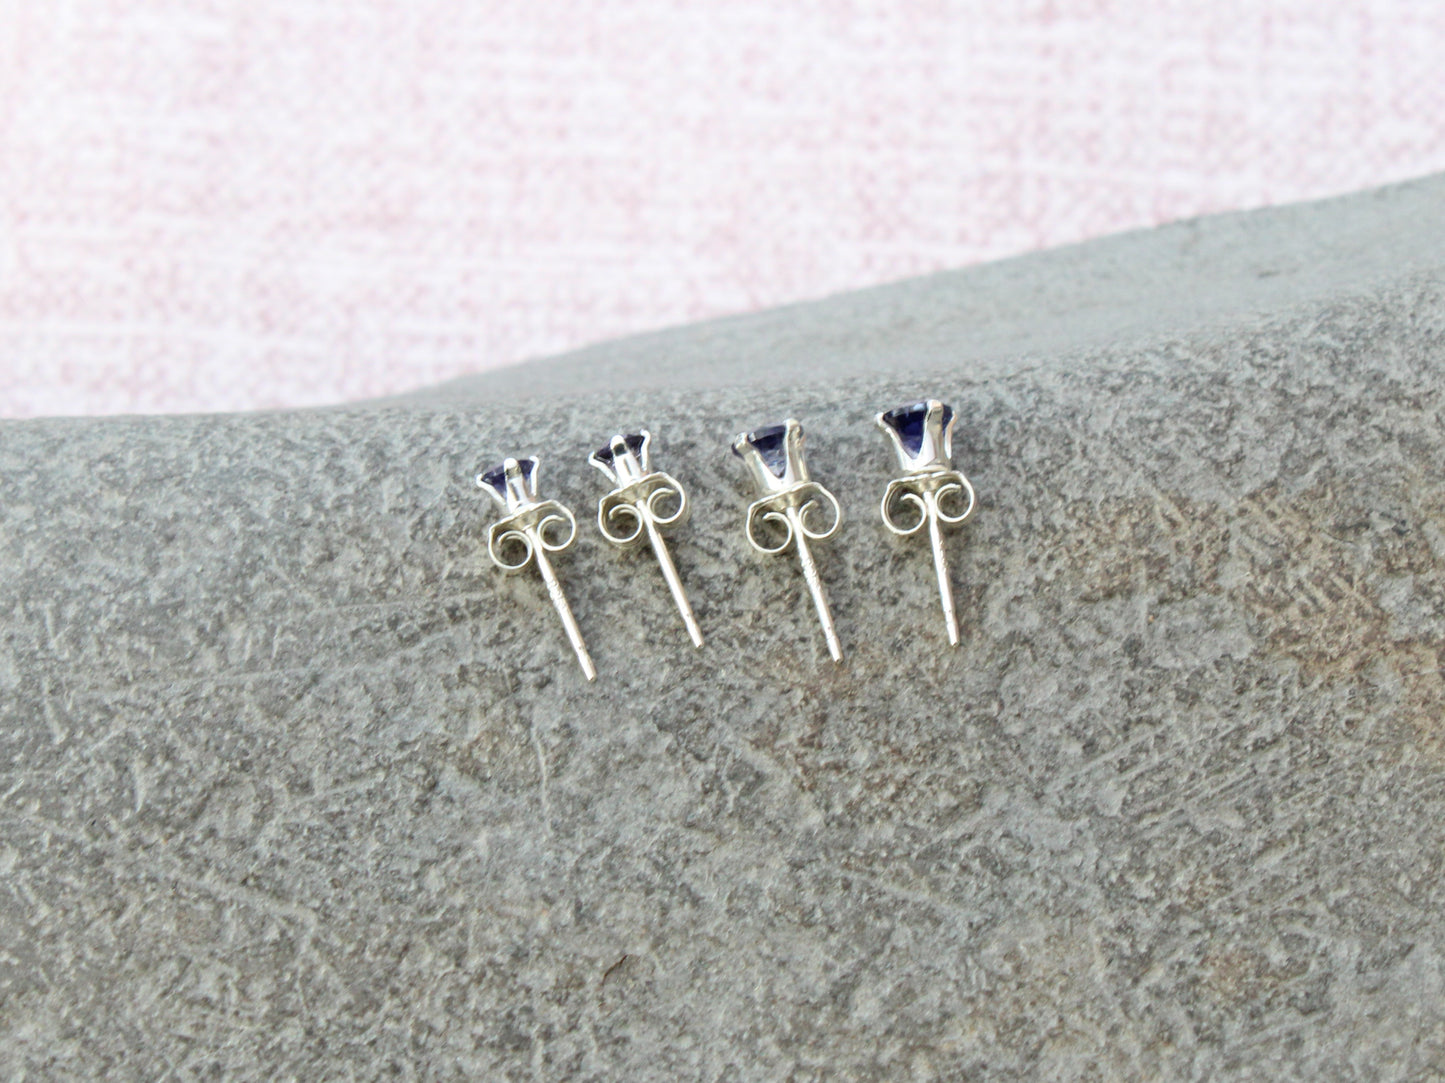 Iolite stud earrings in sterling silver or gold.